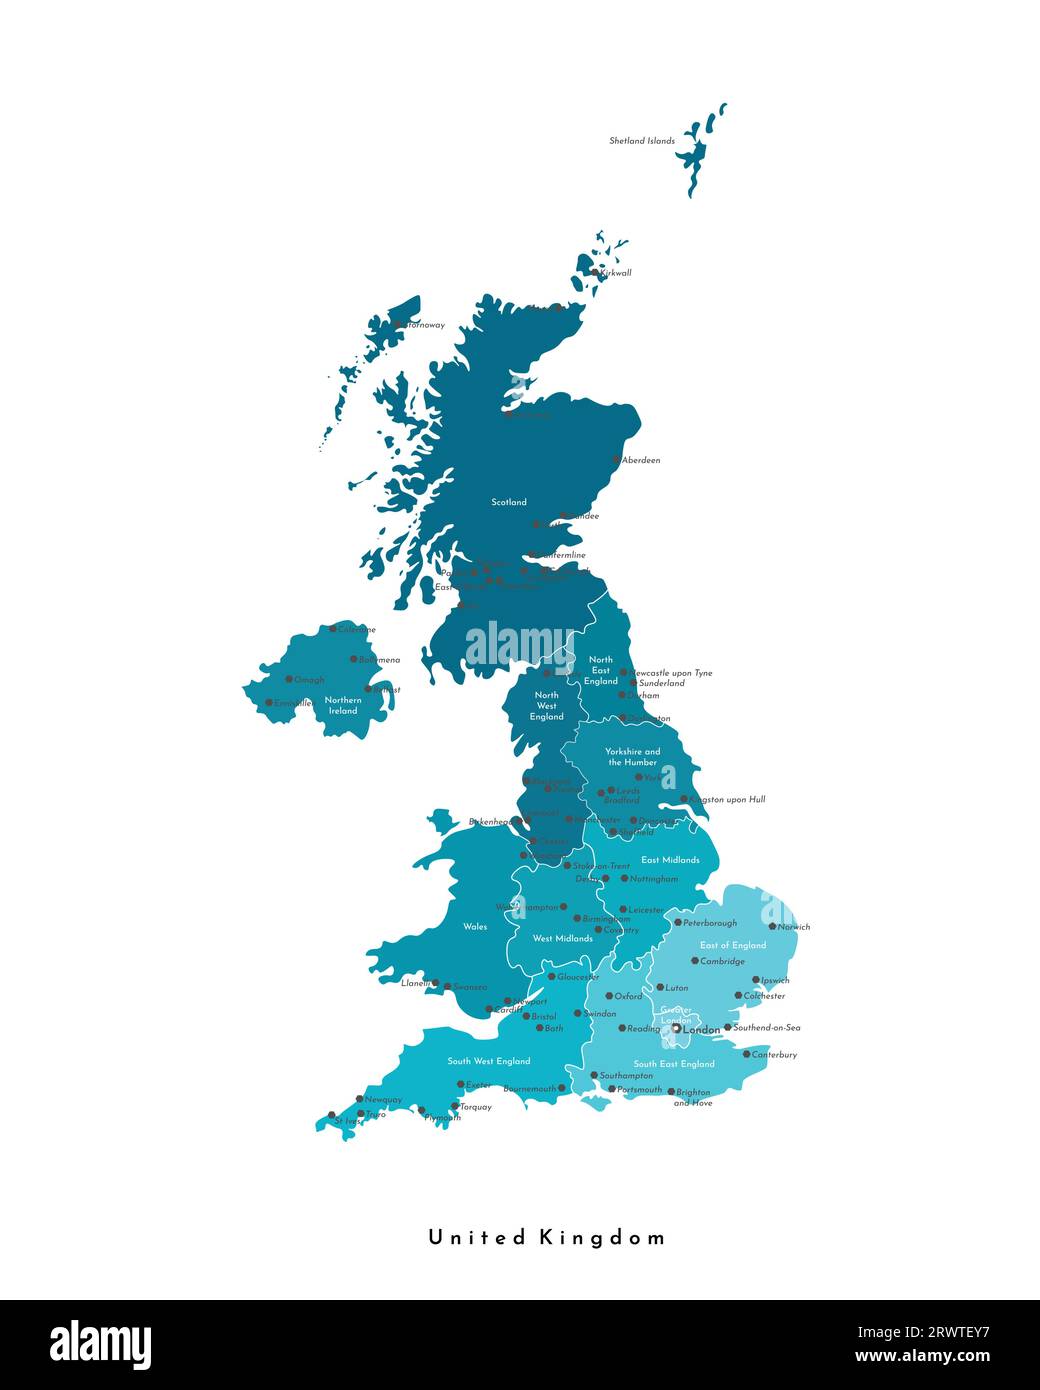 Illustrazione vettoriale moderna isolata. Mappa amministrativa semplificata del Regno Unito di Gran Bretagna e Irlanda del Nord (Regno Unito). Forme blu. Nomi di Illustrazione Vettoriale